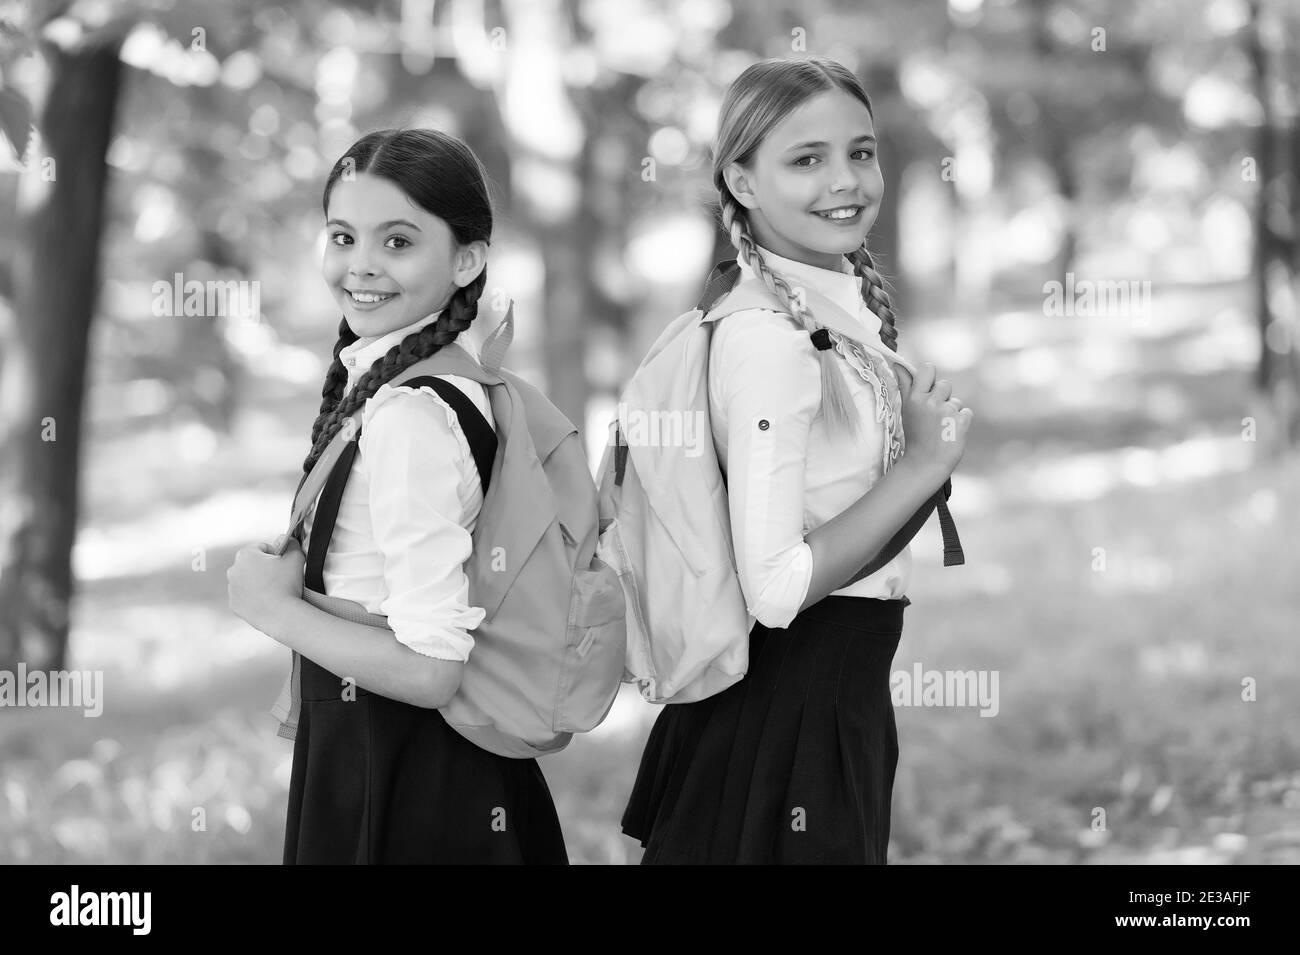 Un Ambiente Positivo Chicas Adolescentes Con Mochilas Caminando En El Parque De Vuelta A La